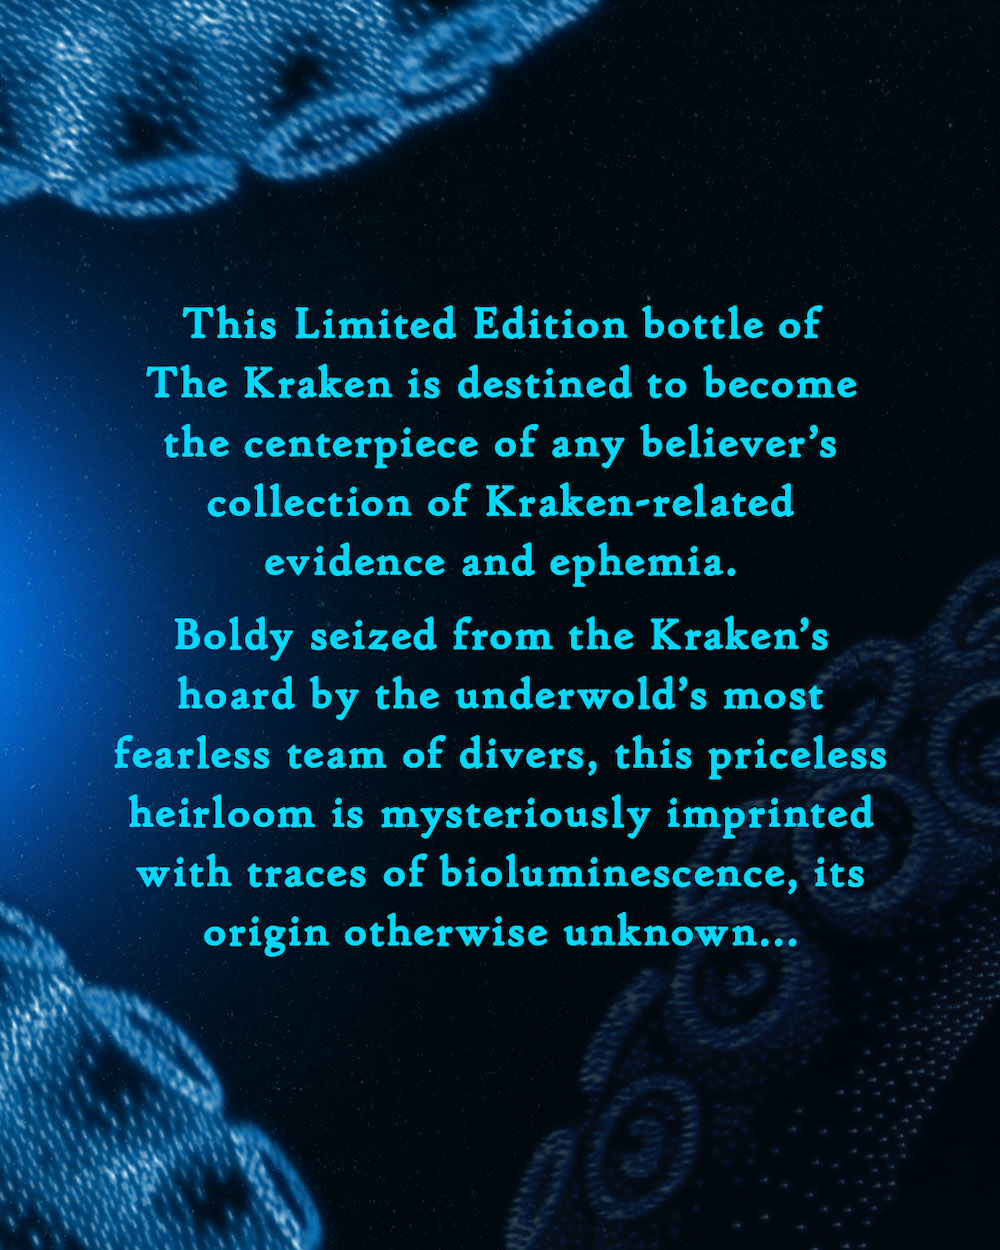 imagen 9 de Imposible perder de vista la nueva botella de The Kraken.